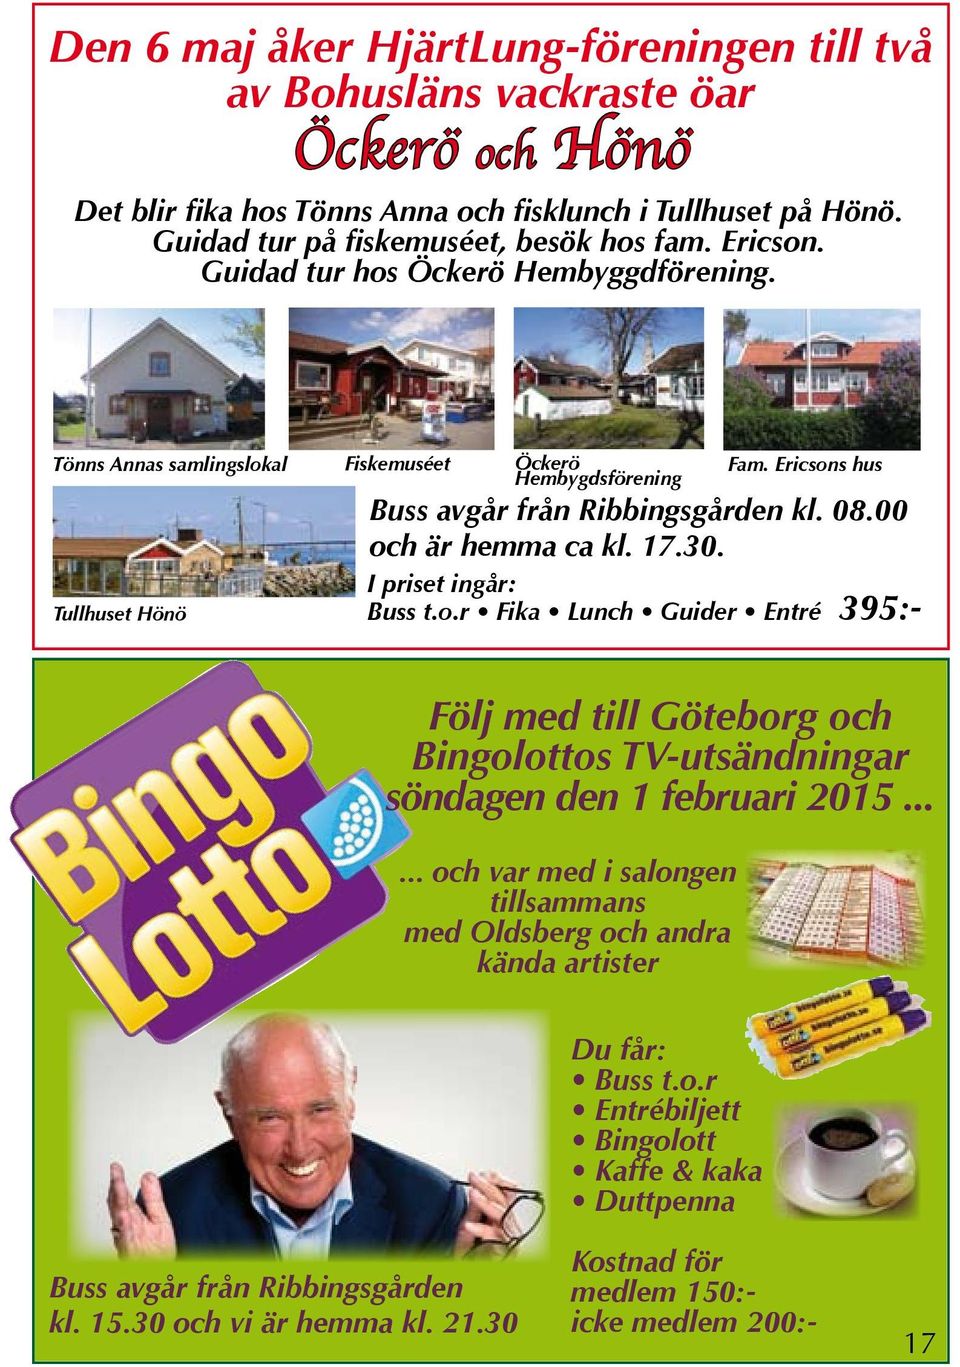 00 och är hemma ca kl. 17.30. I priset ingår: Buss t.o.r Fika Lunch Guider Entré 395:- Följ med till Göteborg och Bingolottos TV-utsändningar söndagen den 1 februari 2015.